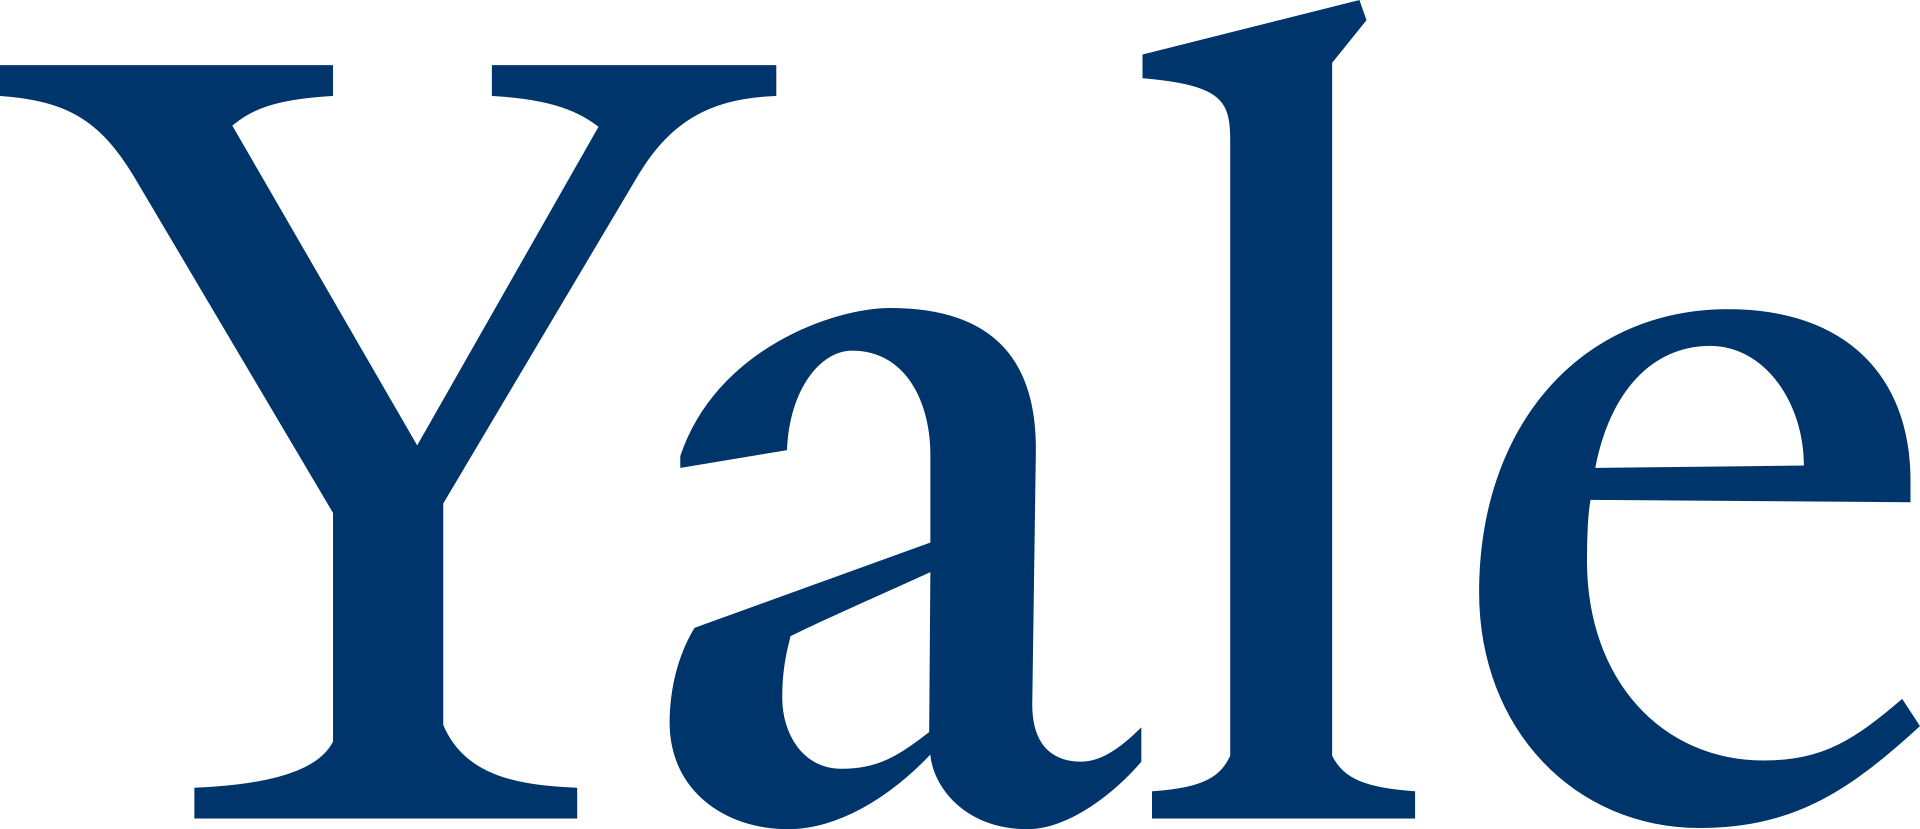 Yale University logo, By Yale University - http://identity.yale.edu/yale-logo-wordmarks, Public Domain, https://commons.wikimedia.org/w/index.php?curid=37348190"